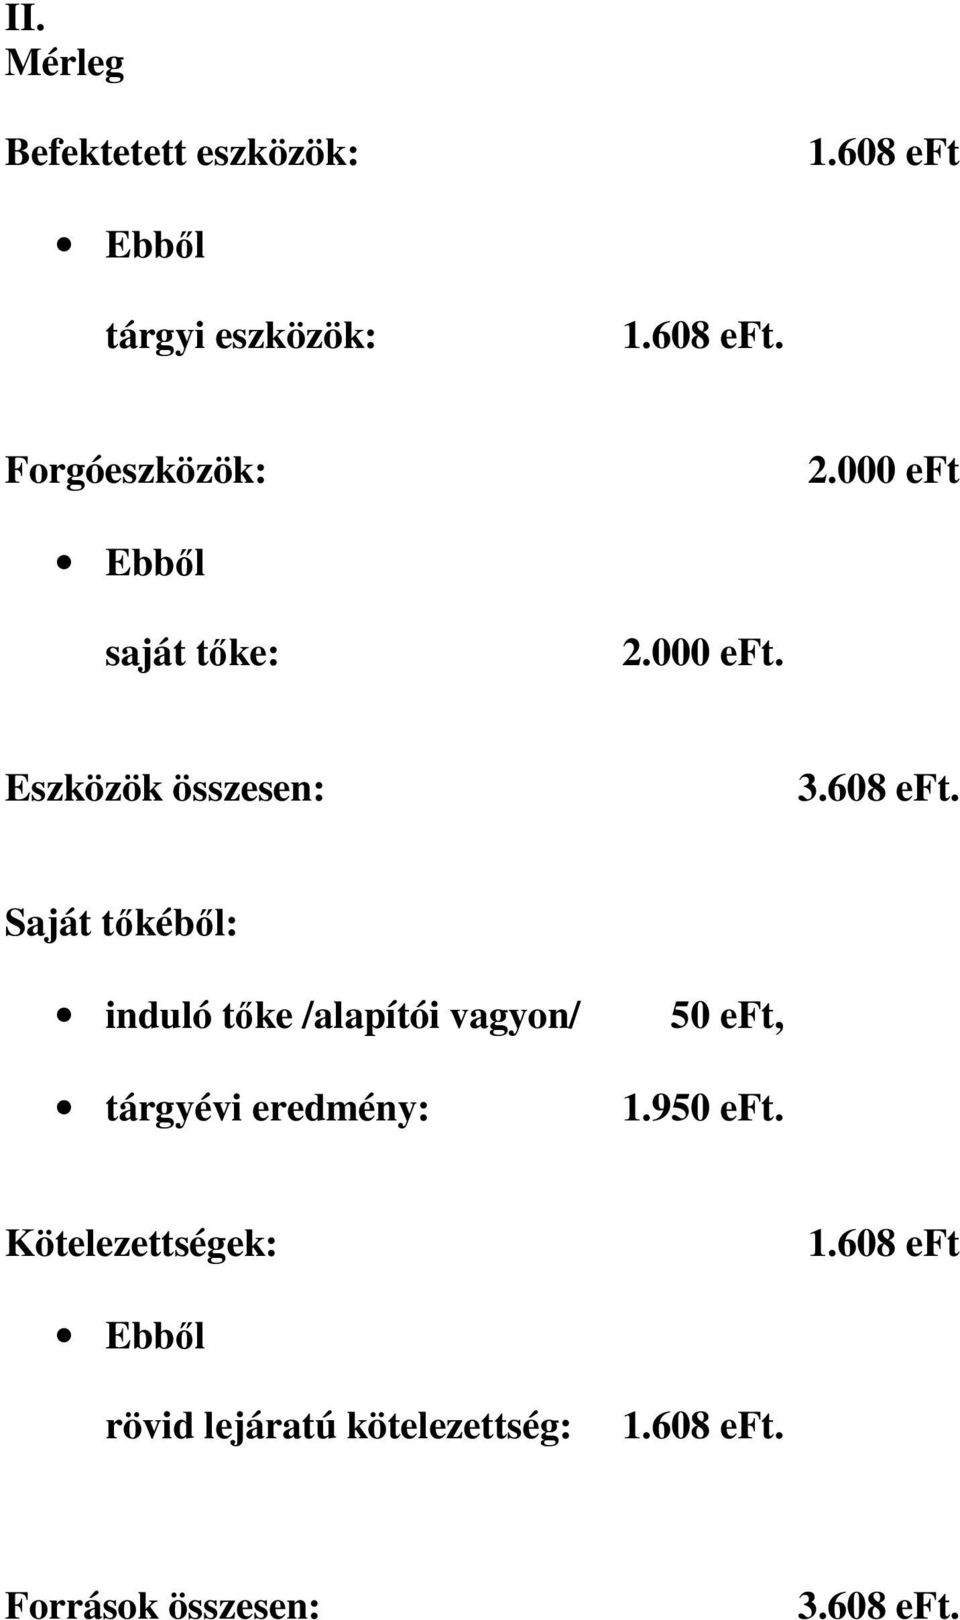 Saját tıkébıl: induló tıke /alapítói vagyon/ tárgyévi eredmény: 50 eft, 1.950 eft.